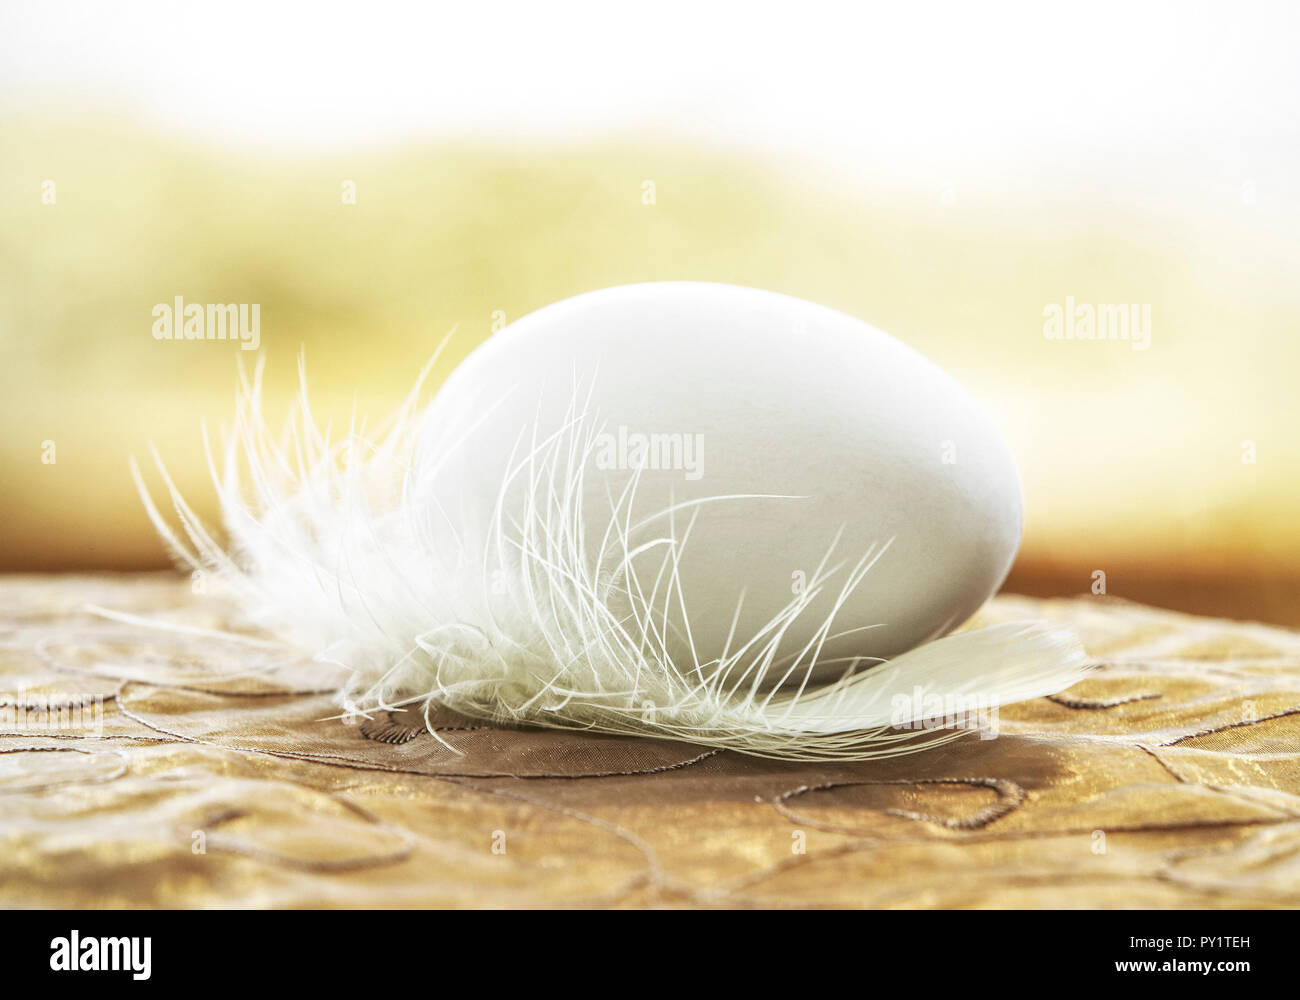 Ostern, weisses Ei auf Feder Stock Photo